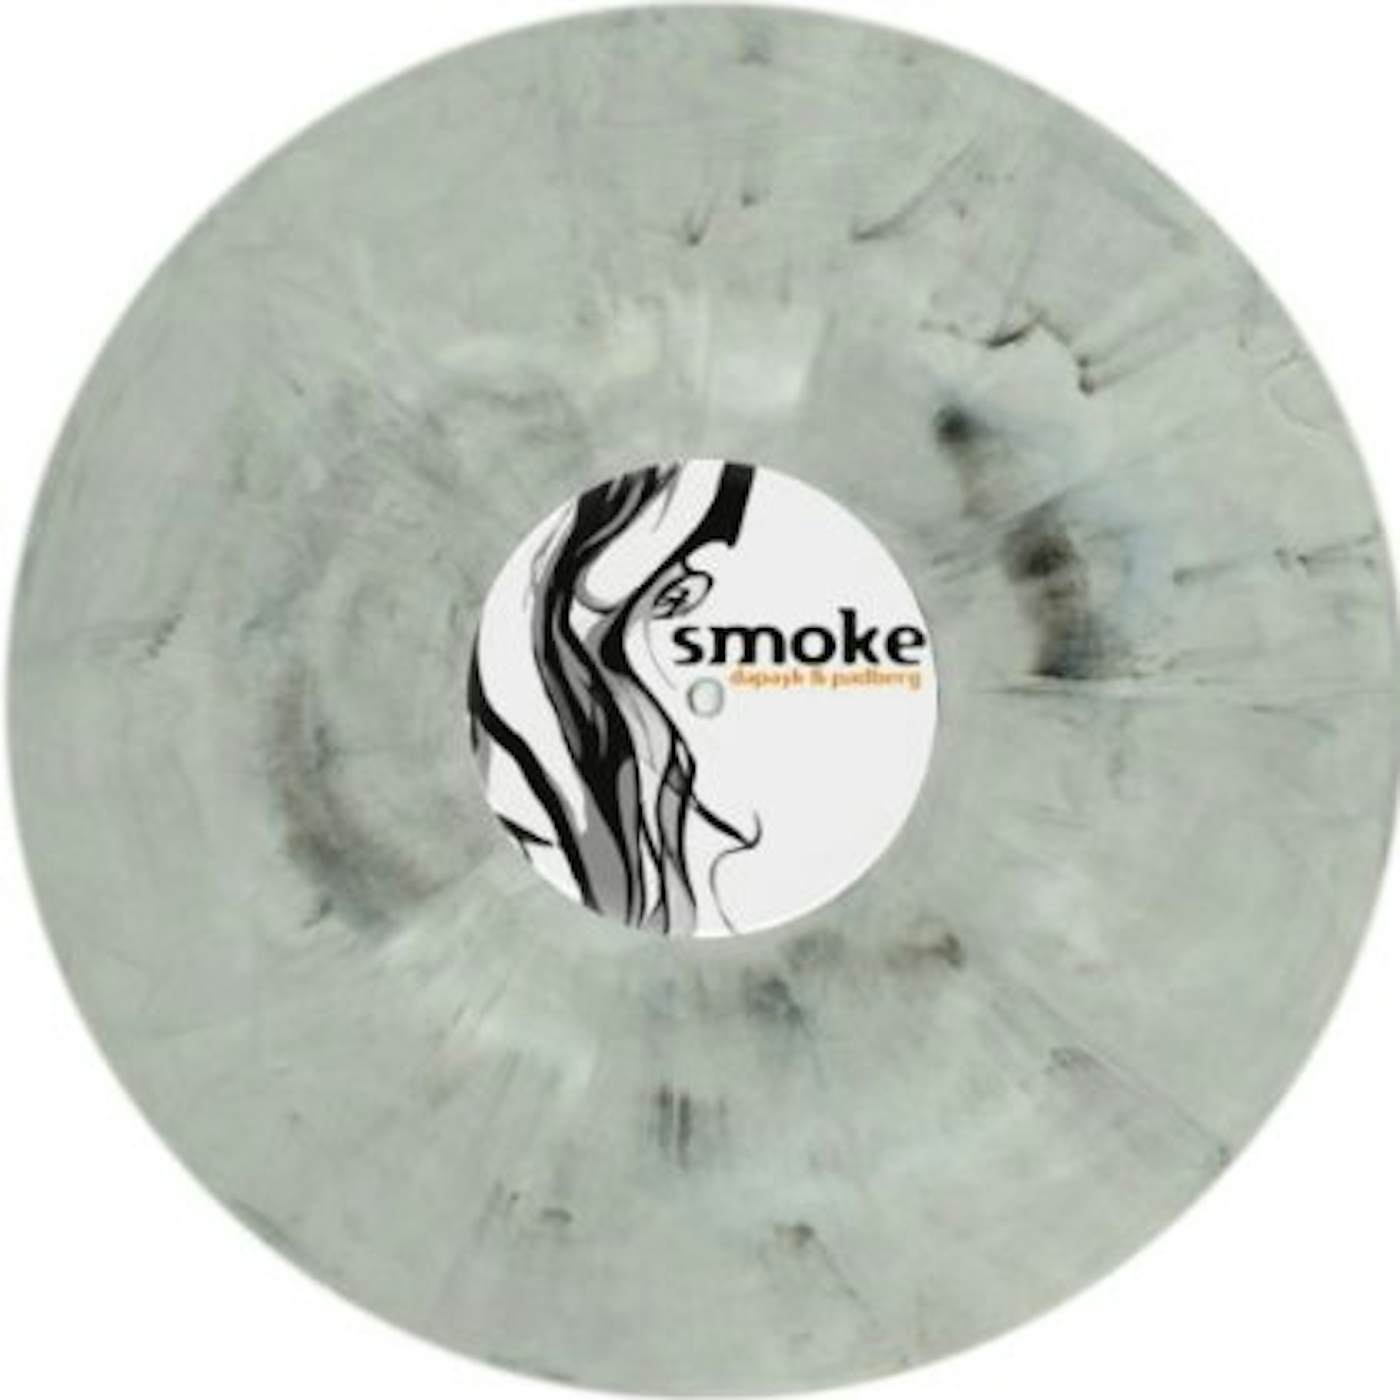 Dapayk & Padberg Smoke Vinyl Record